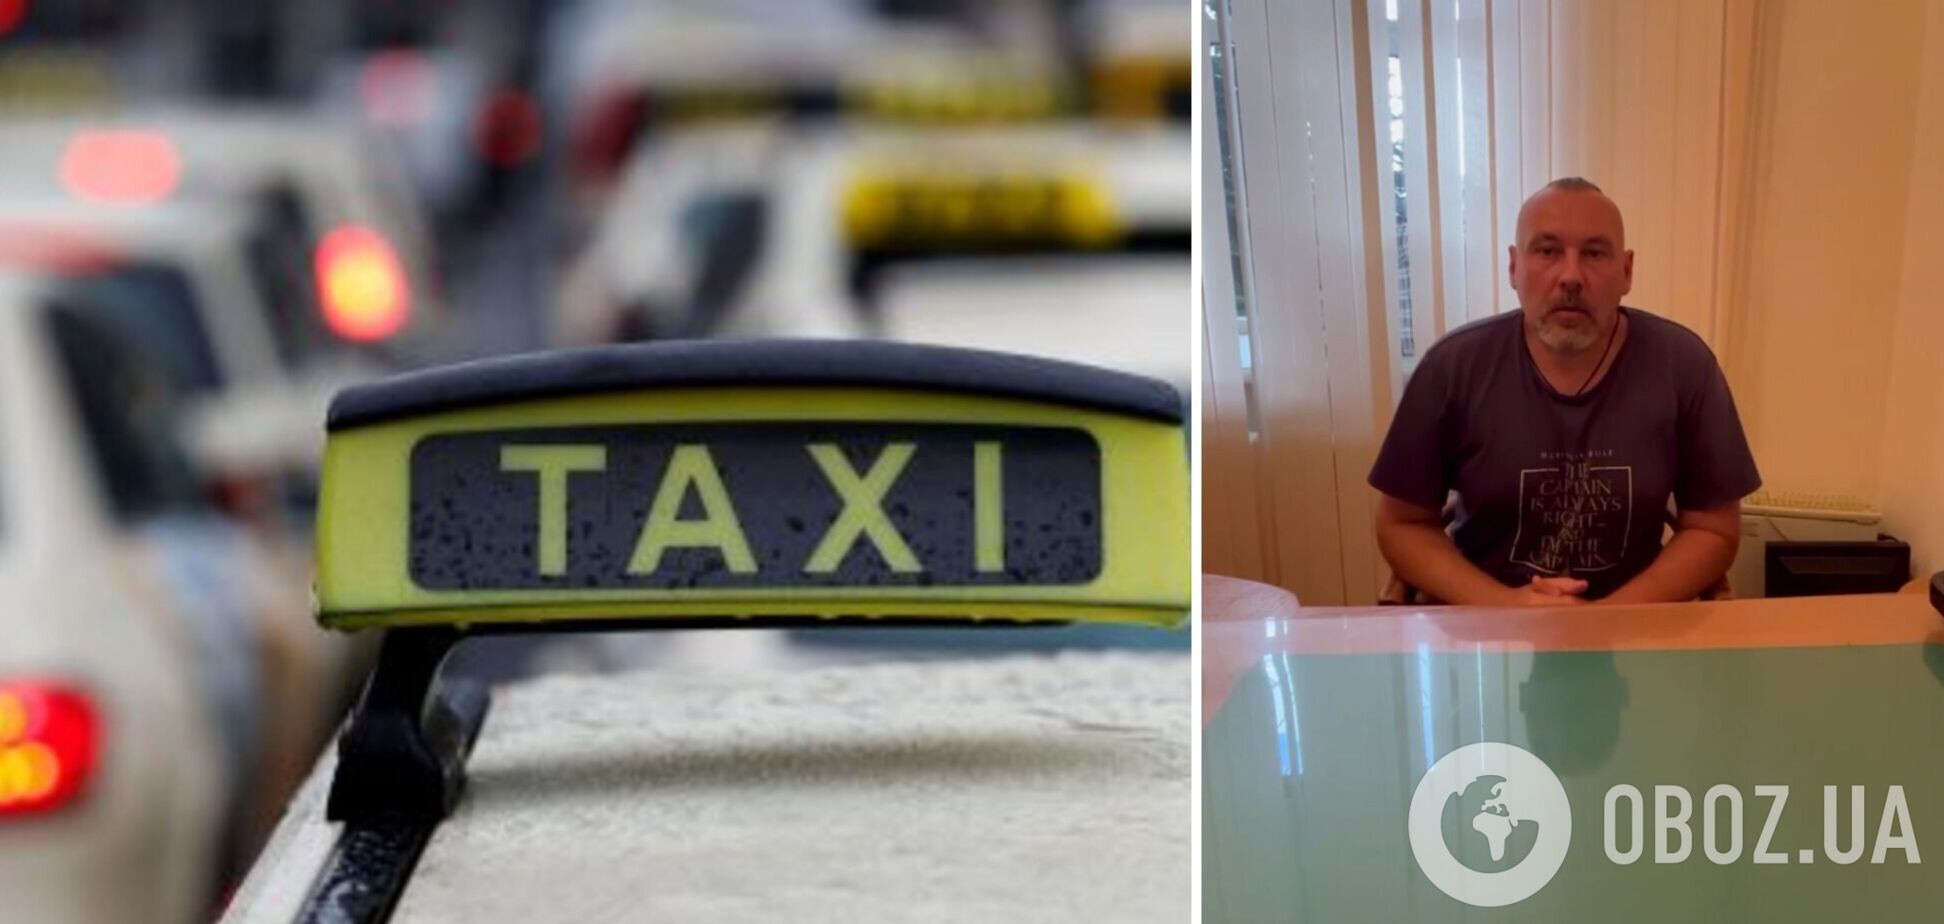 'Балакайте на задр**ном языке': харьковский таксист на украинском извинился за скандал. Видео